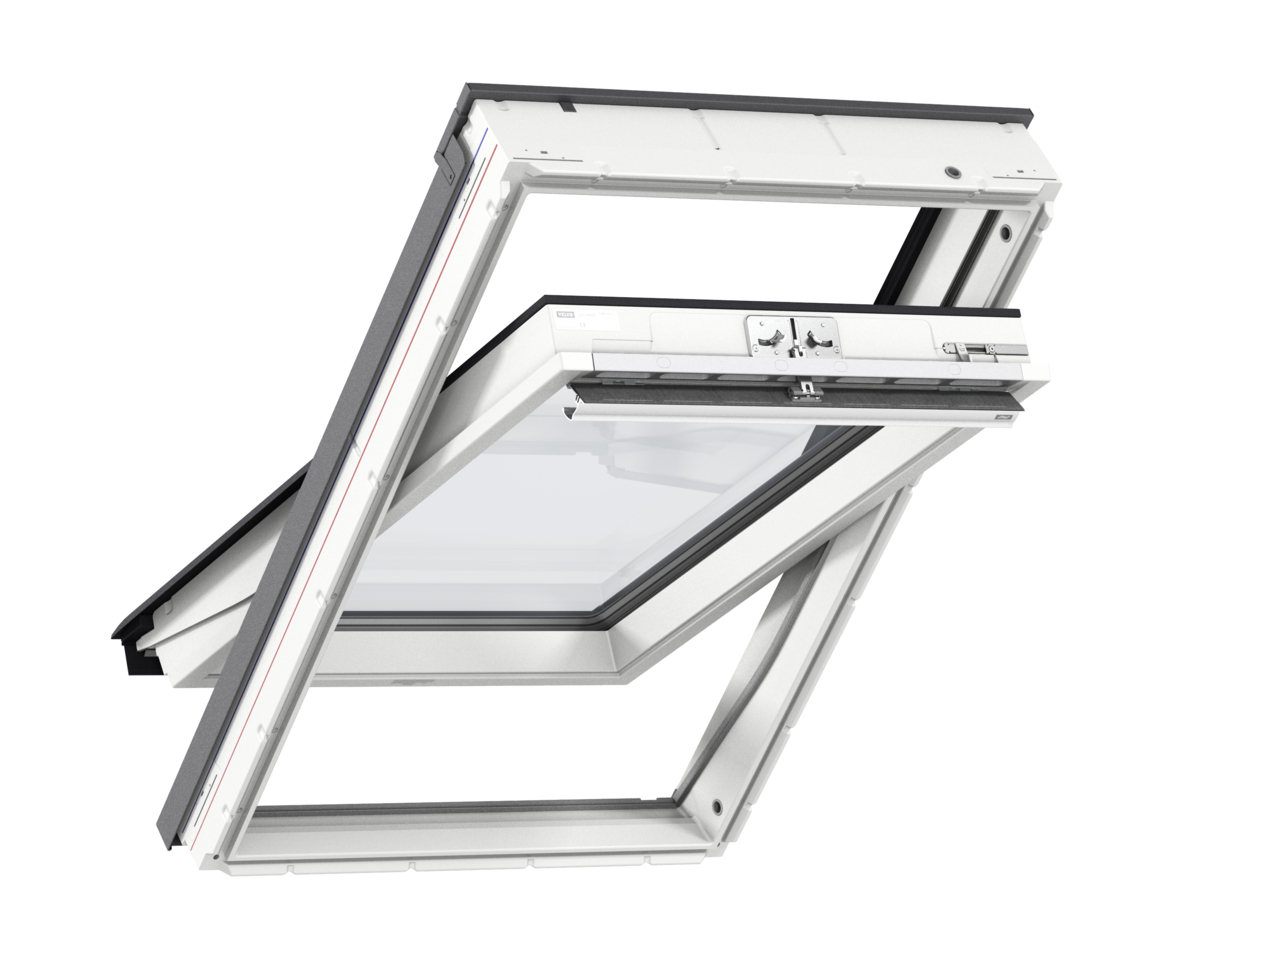 Мансардное двухкамерное белое окно Velux (Велюкс) GLU FK06 0061 66х118 см (ручка сверху), Деревянное мансардное окно в полиуретане с двухкамерным стеклопакетом GLU 0061 FK06 Окно 66*118 см, Velux